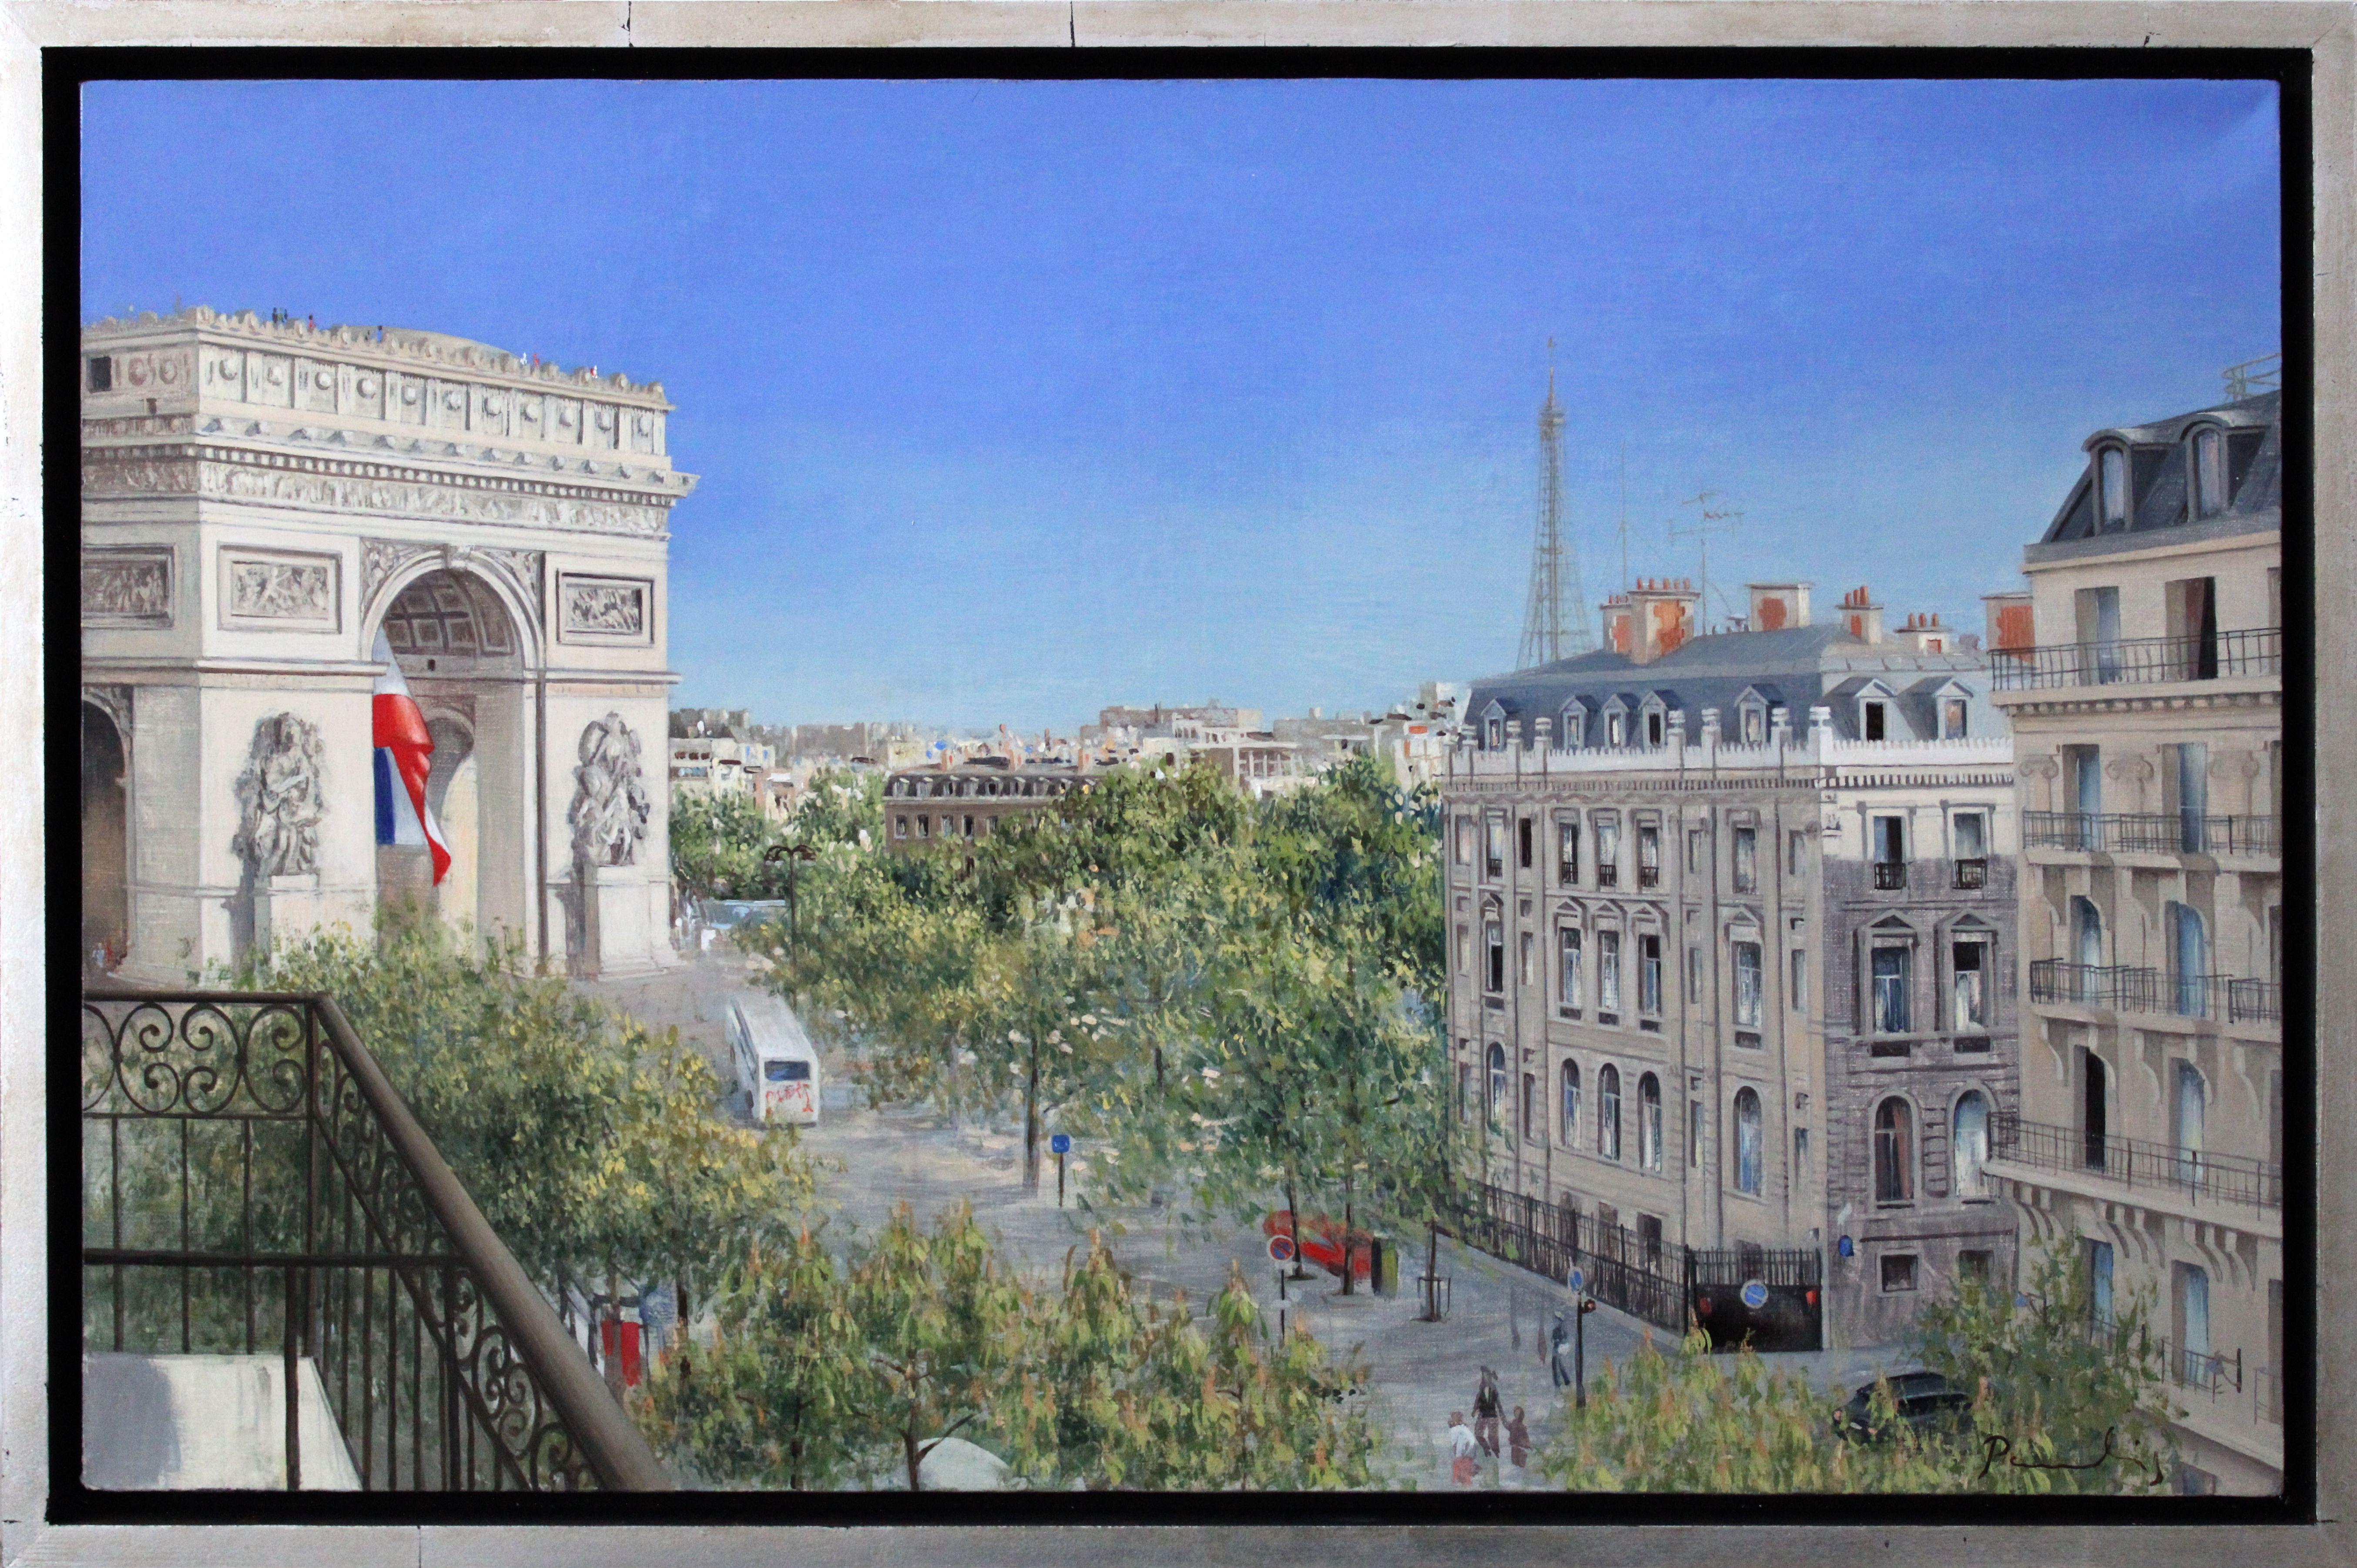 Triumphal arch. 2023. Oil on canvas, 45x70 cm - Painting by Paulis Postazs